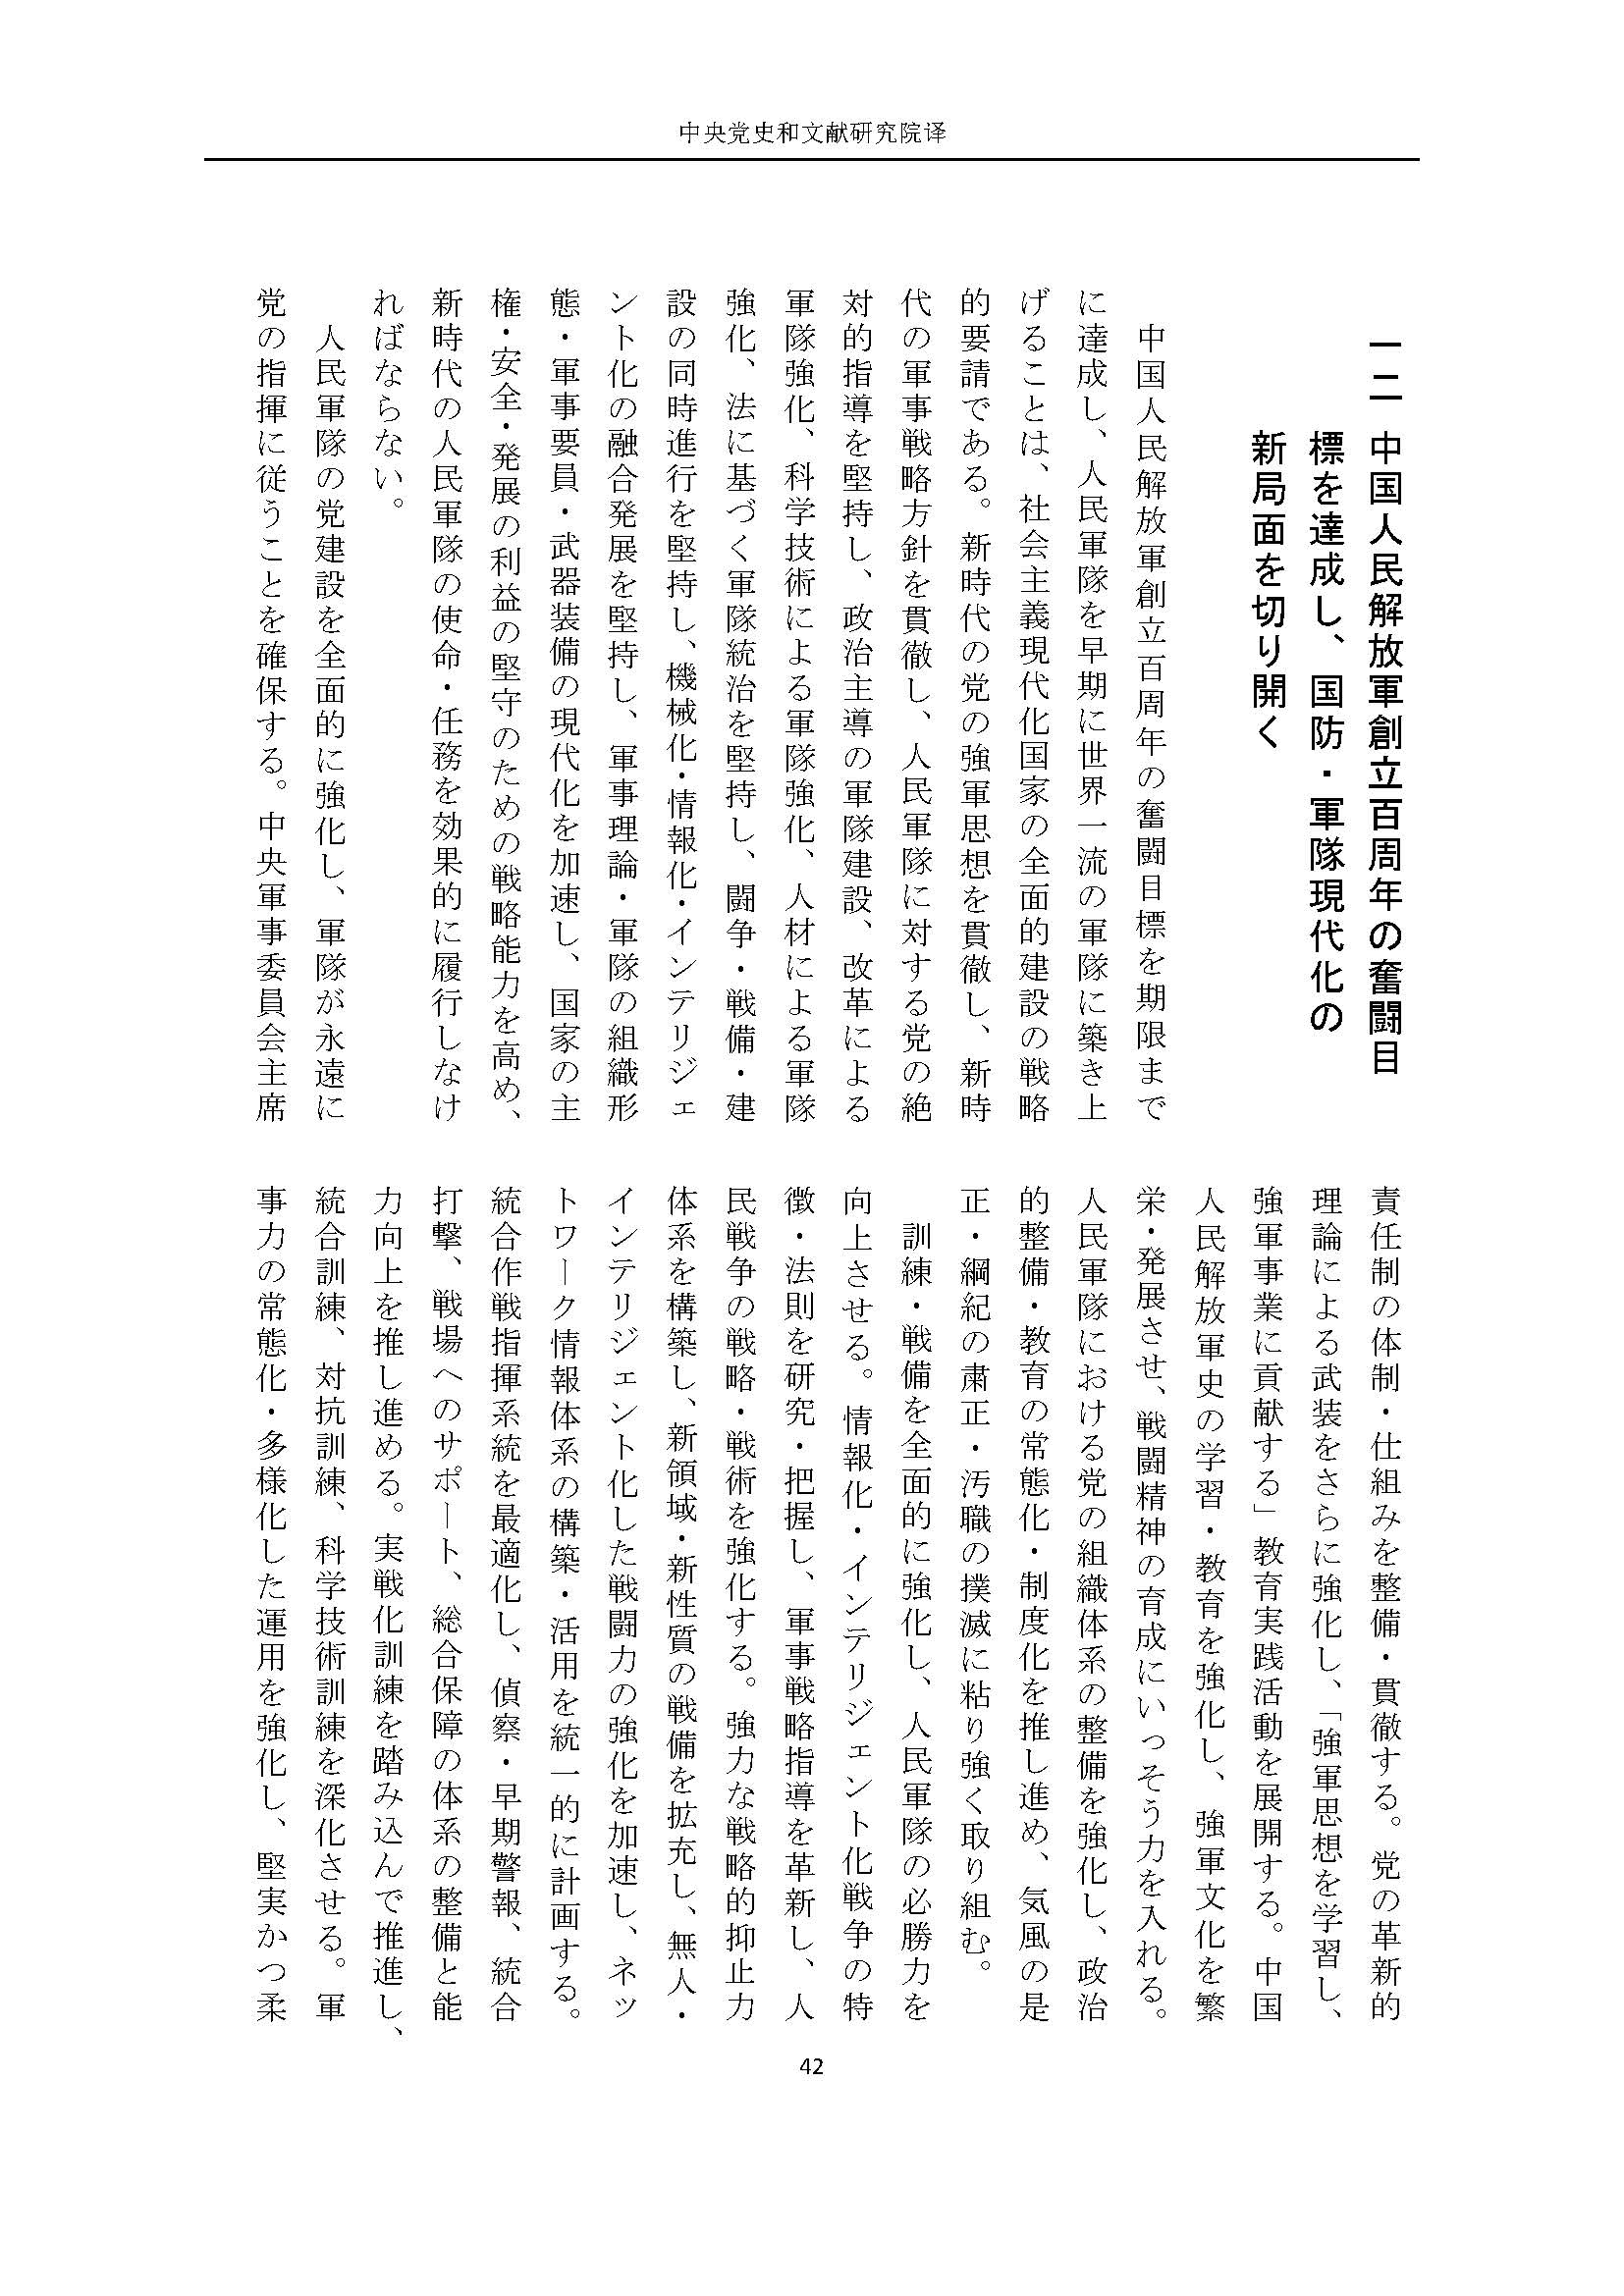 二十大报告（日文全文）_页面_43